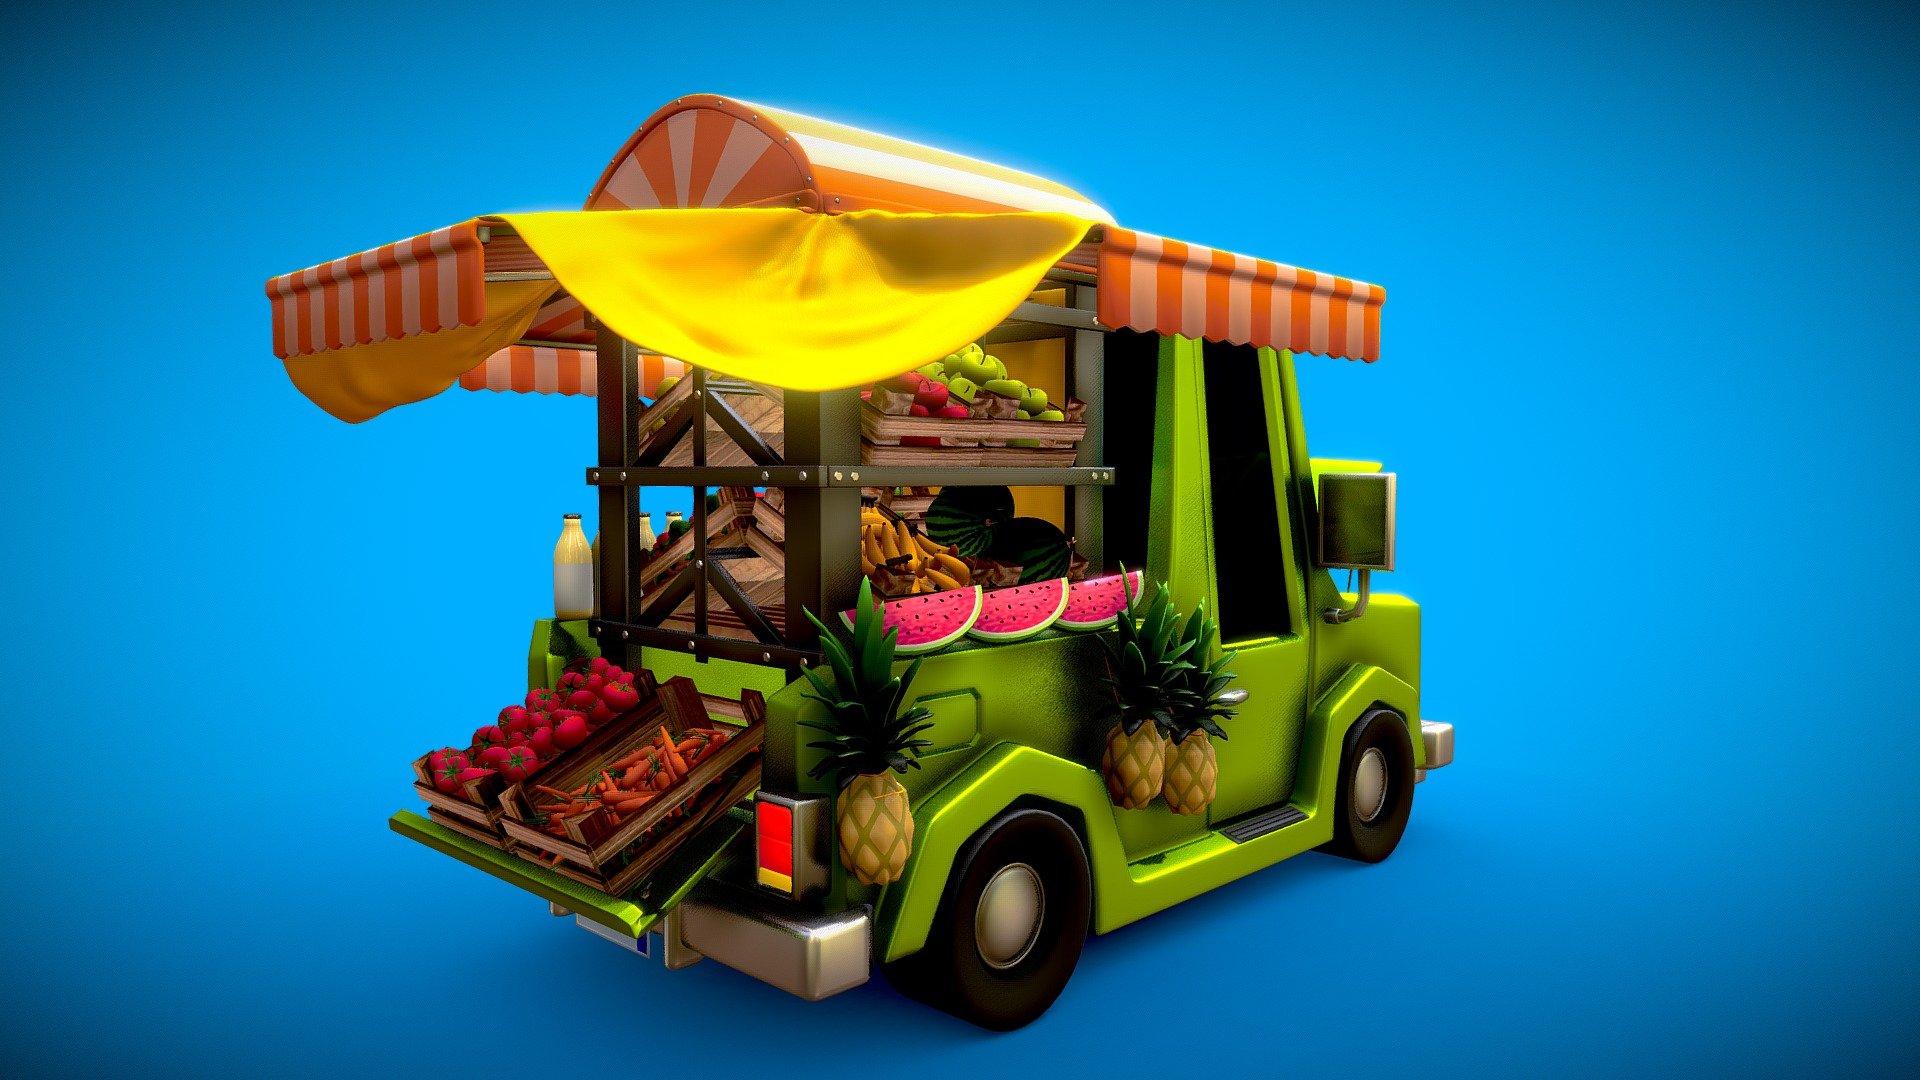 Cartoon Pickup Truck modeled in Blender 3.1

Total Faces: 724,239
Total Verts: 726,363
Total Tris: 1,442,308 - Cartoon Pickup Truck - Buy Royalty Free 3D model by Toon Goo (@toongoo) 3d model